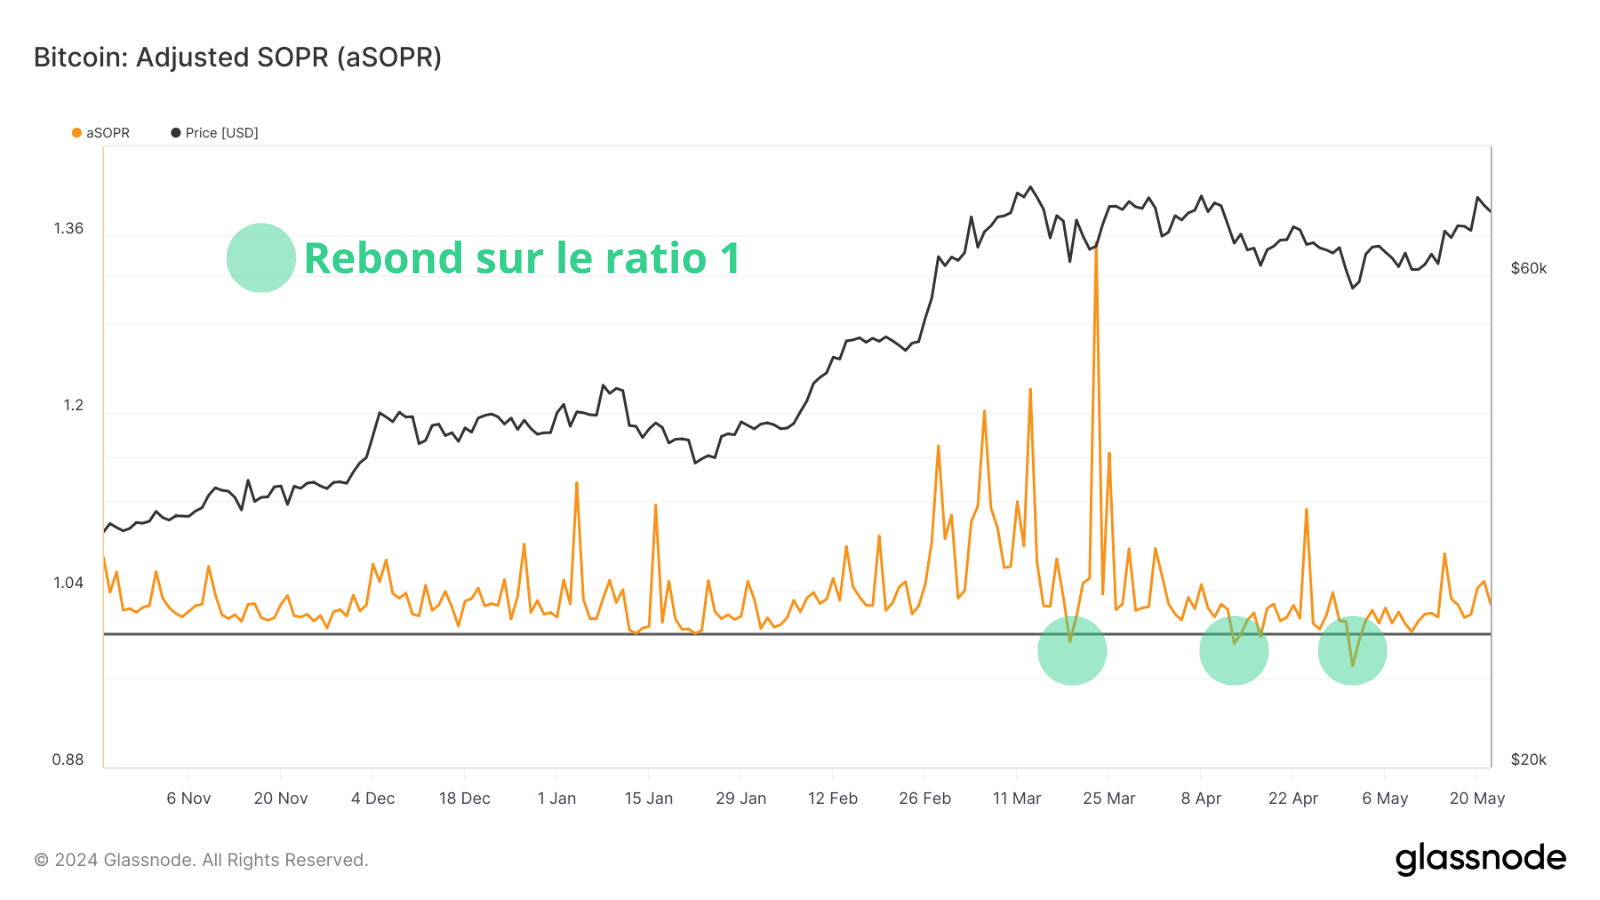 Le SOPR trouve support et rebondit sur son ratio 1, preuve que les investisseurs résistent à la pression.